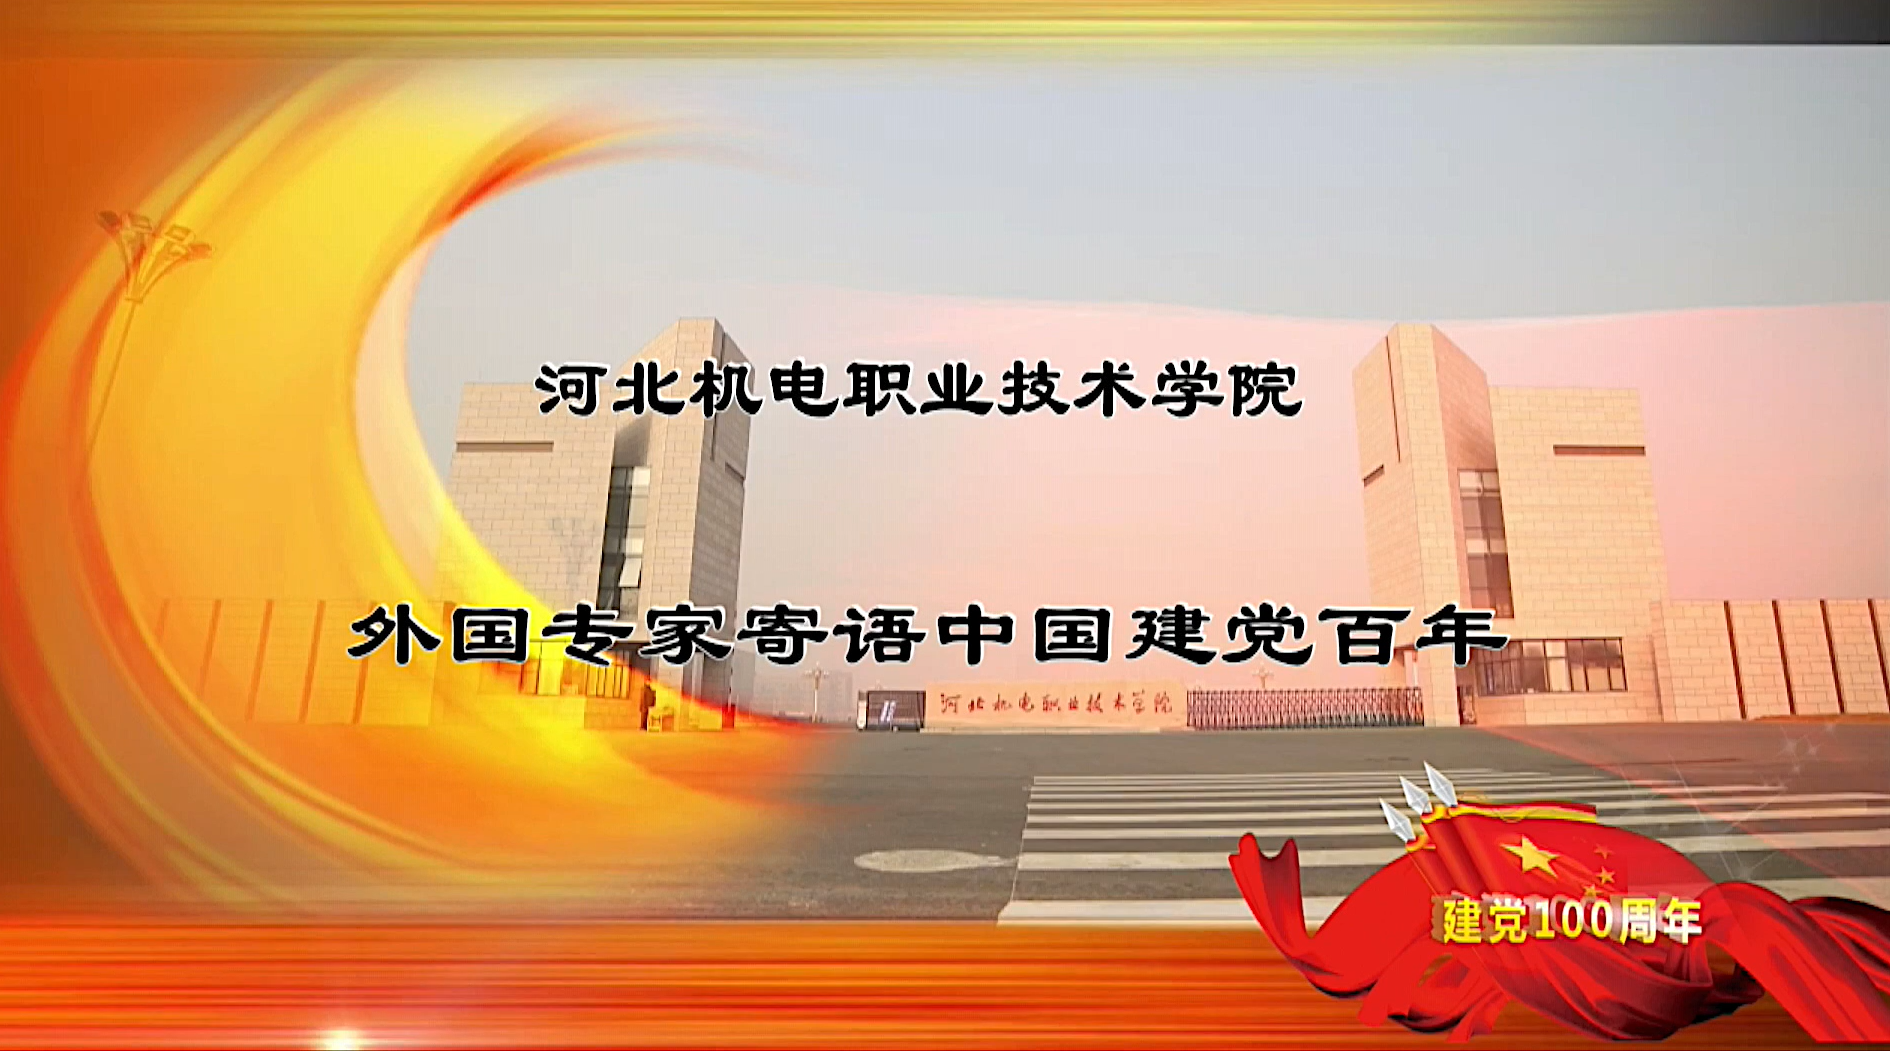 我院国际友人寄语中国建党百年视频在《国际人才交流杂志》发布